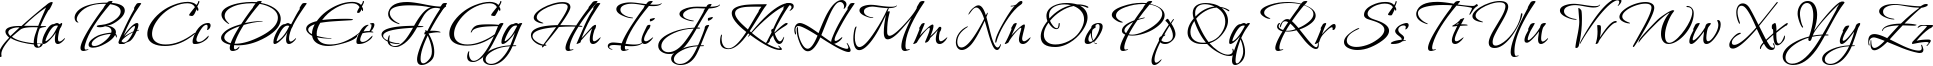 Пример написания английского алфавита шрифтом Vera Crouz